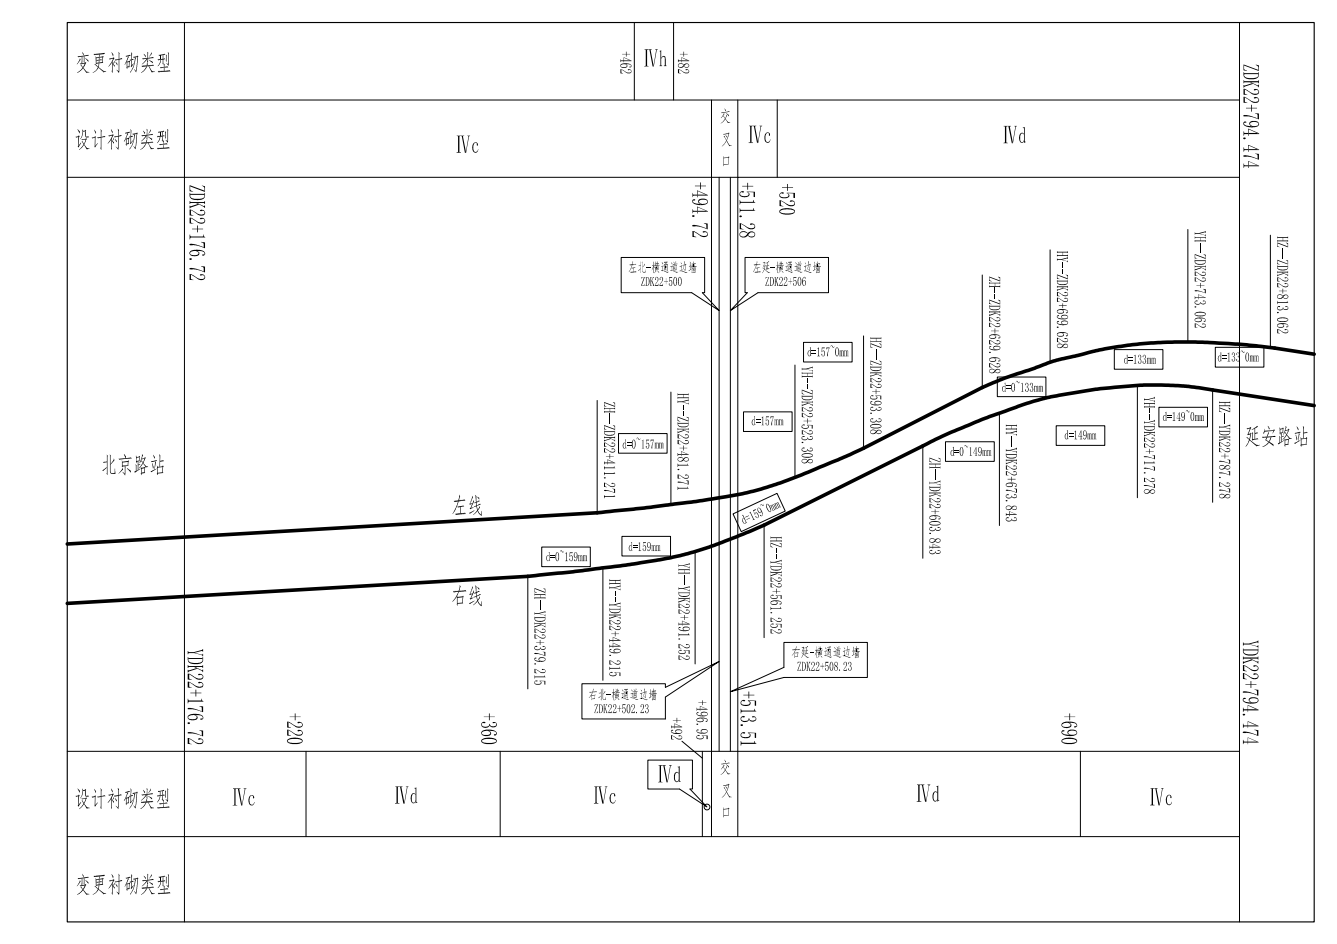 隧道支护衬砌类型及偏移量示意图